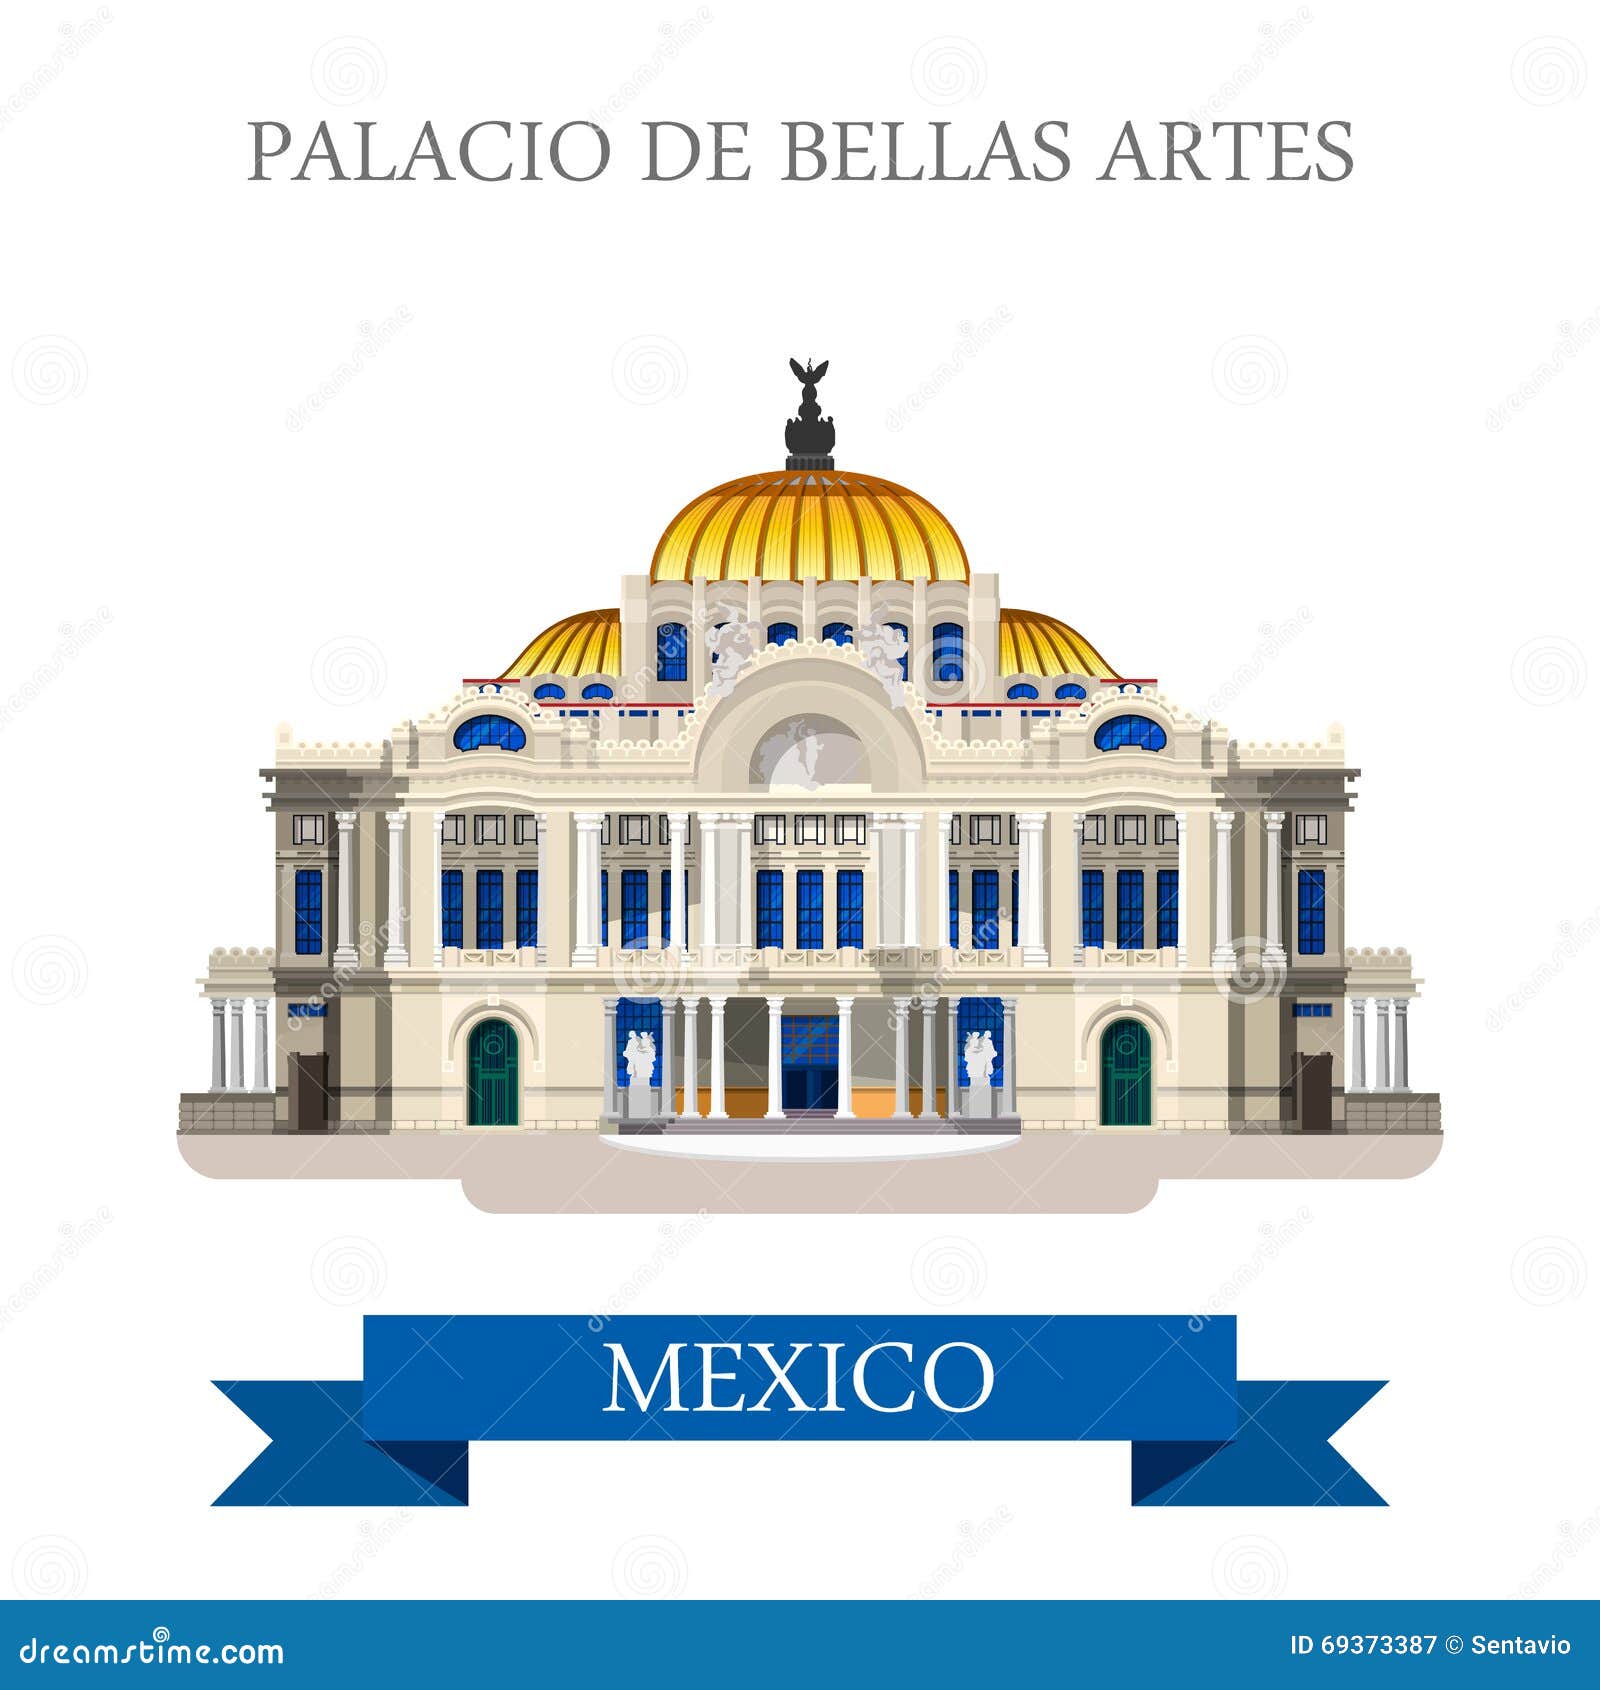 palacio de bellas artes mexico  flat attraction landmarks